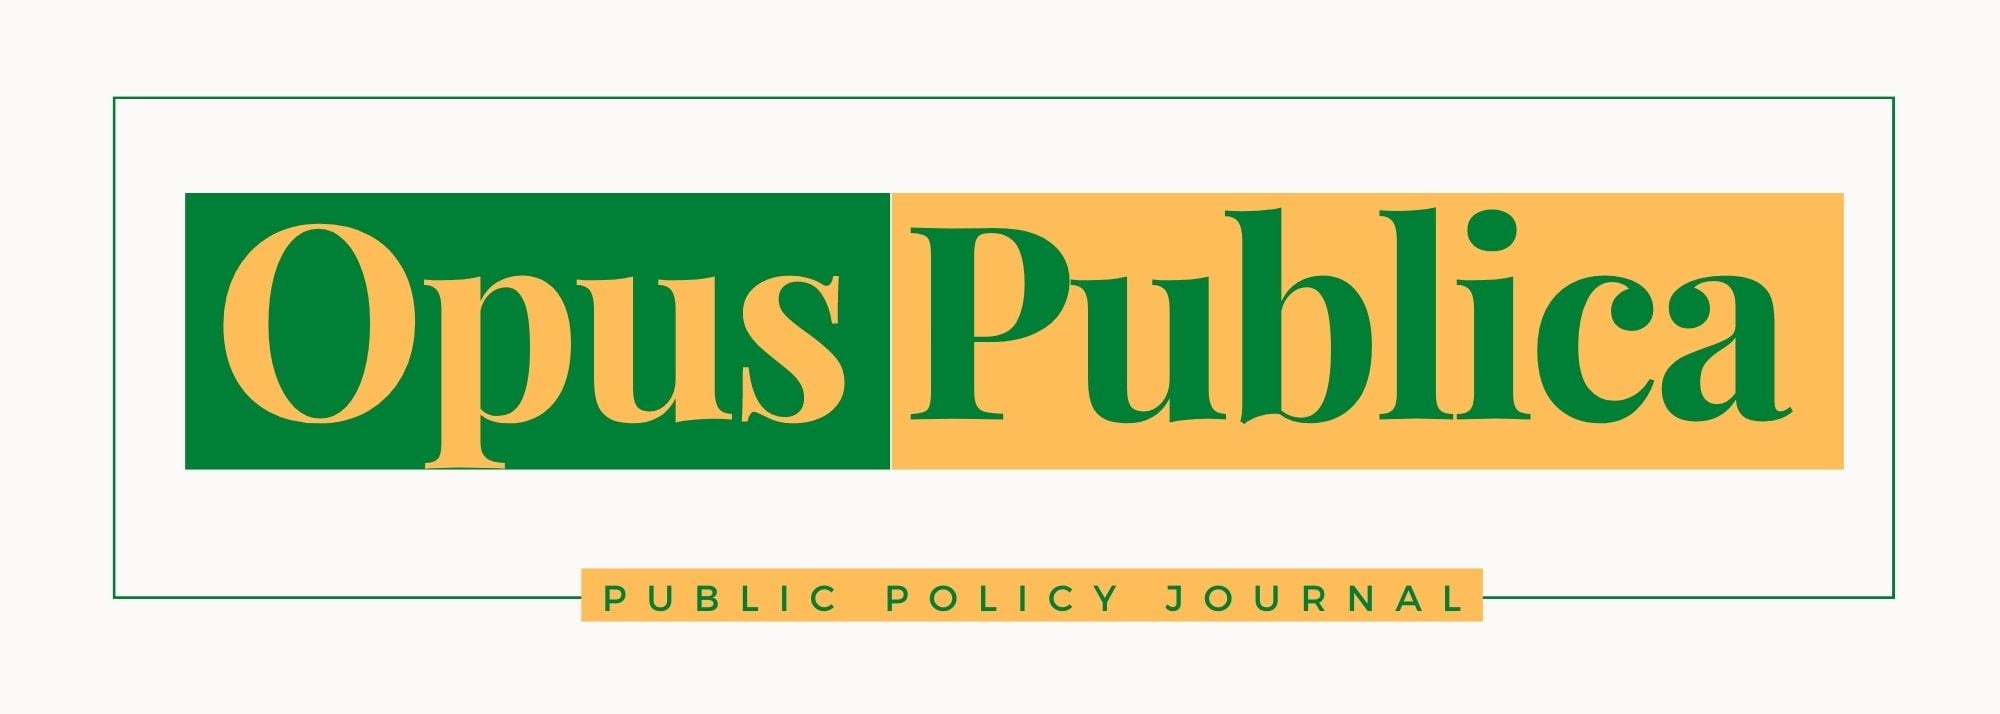 Opus Publica